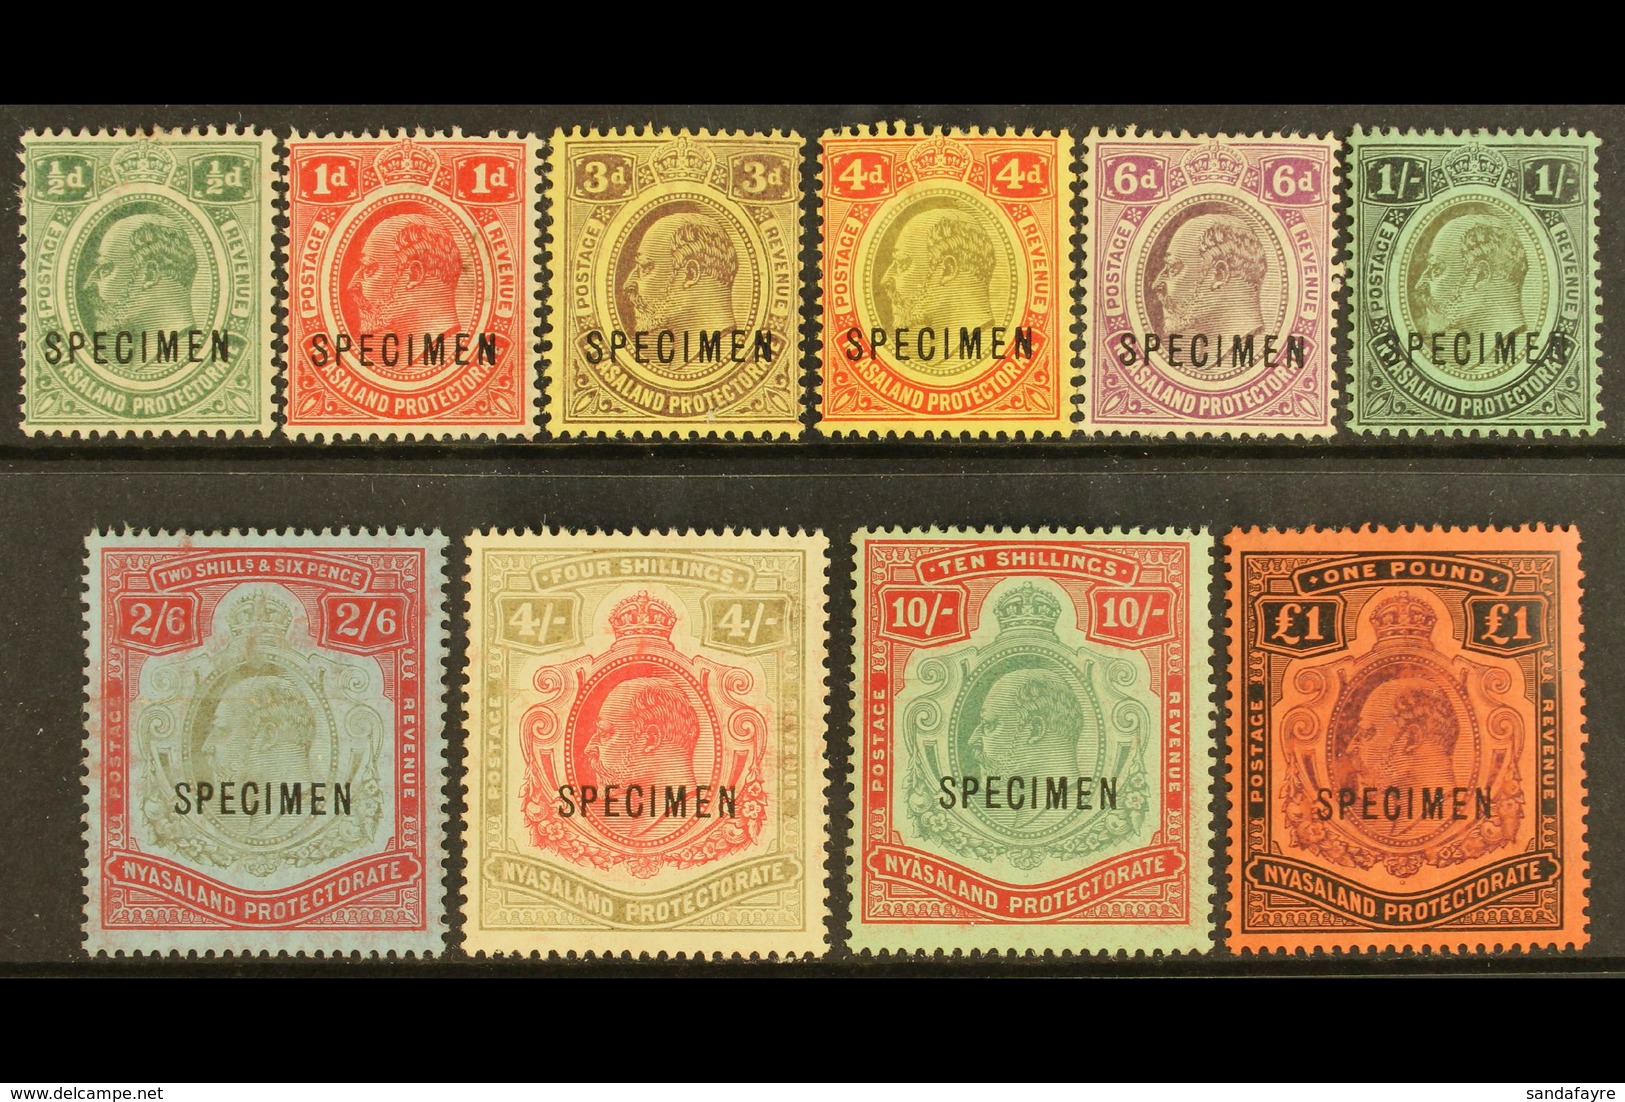 1908 Definitives Set Complete Overprinted "SPECIMEN", SG 59s/66s, Fresh Mint (10 Stamps) For More Images, Please Visit H - Nyassaland (1907-1953)